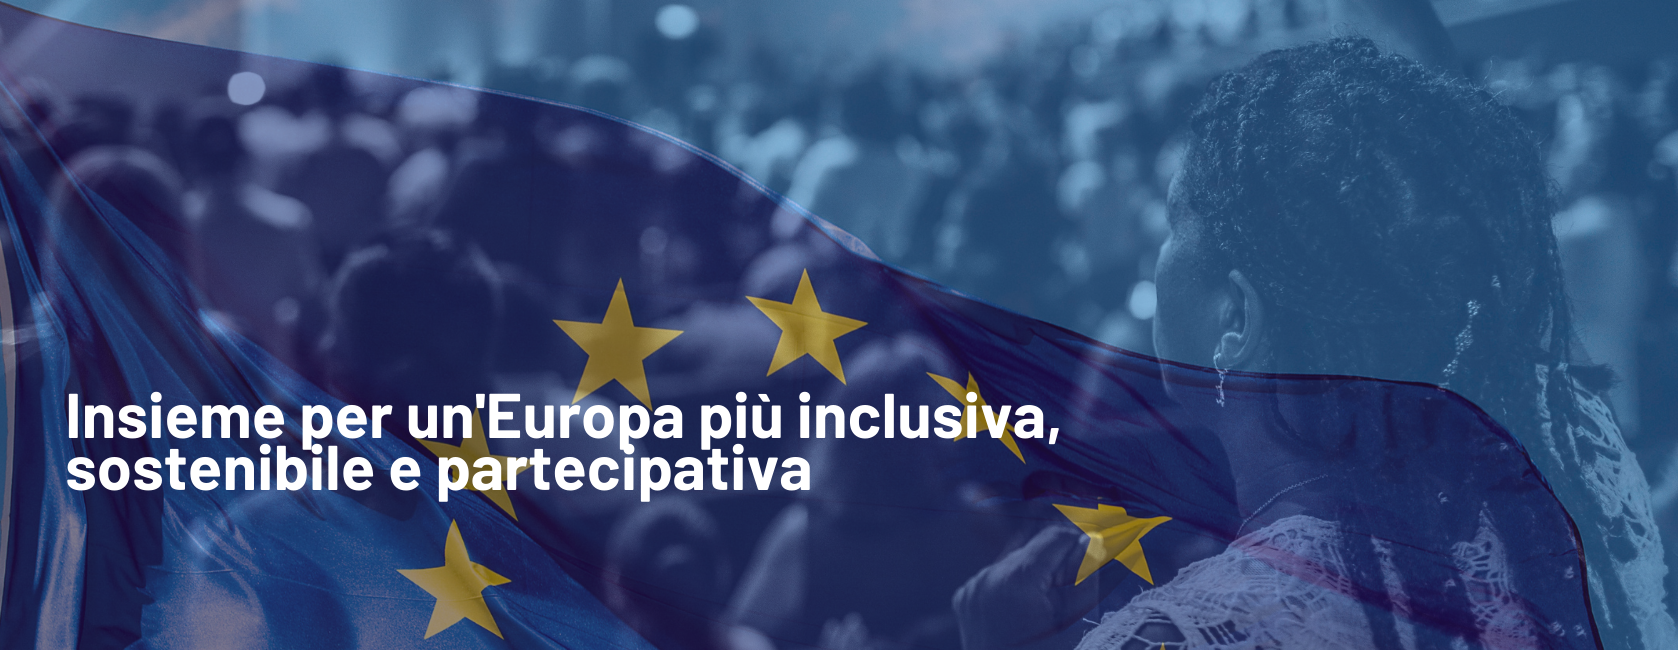 europiamo.org 